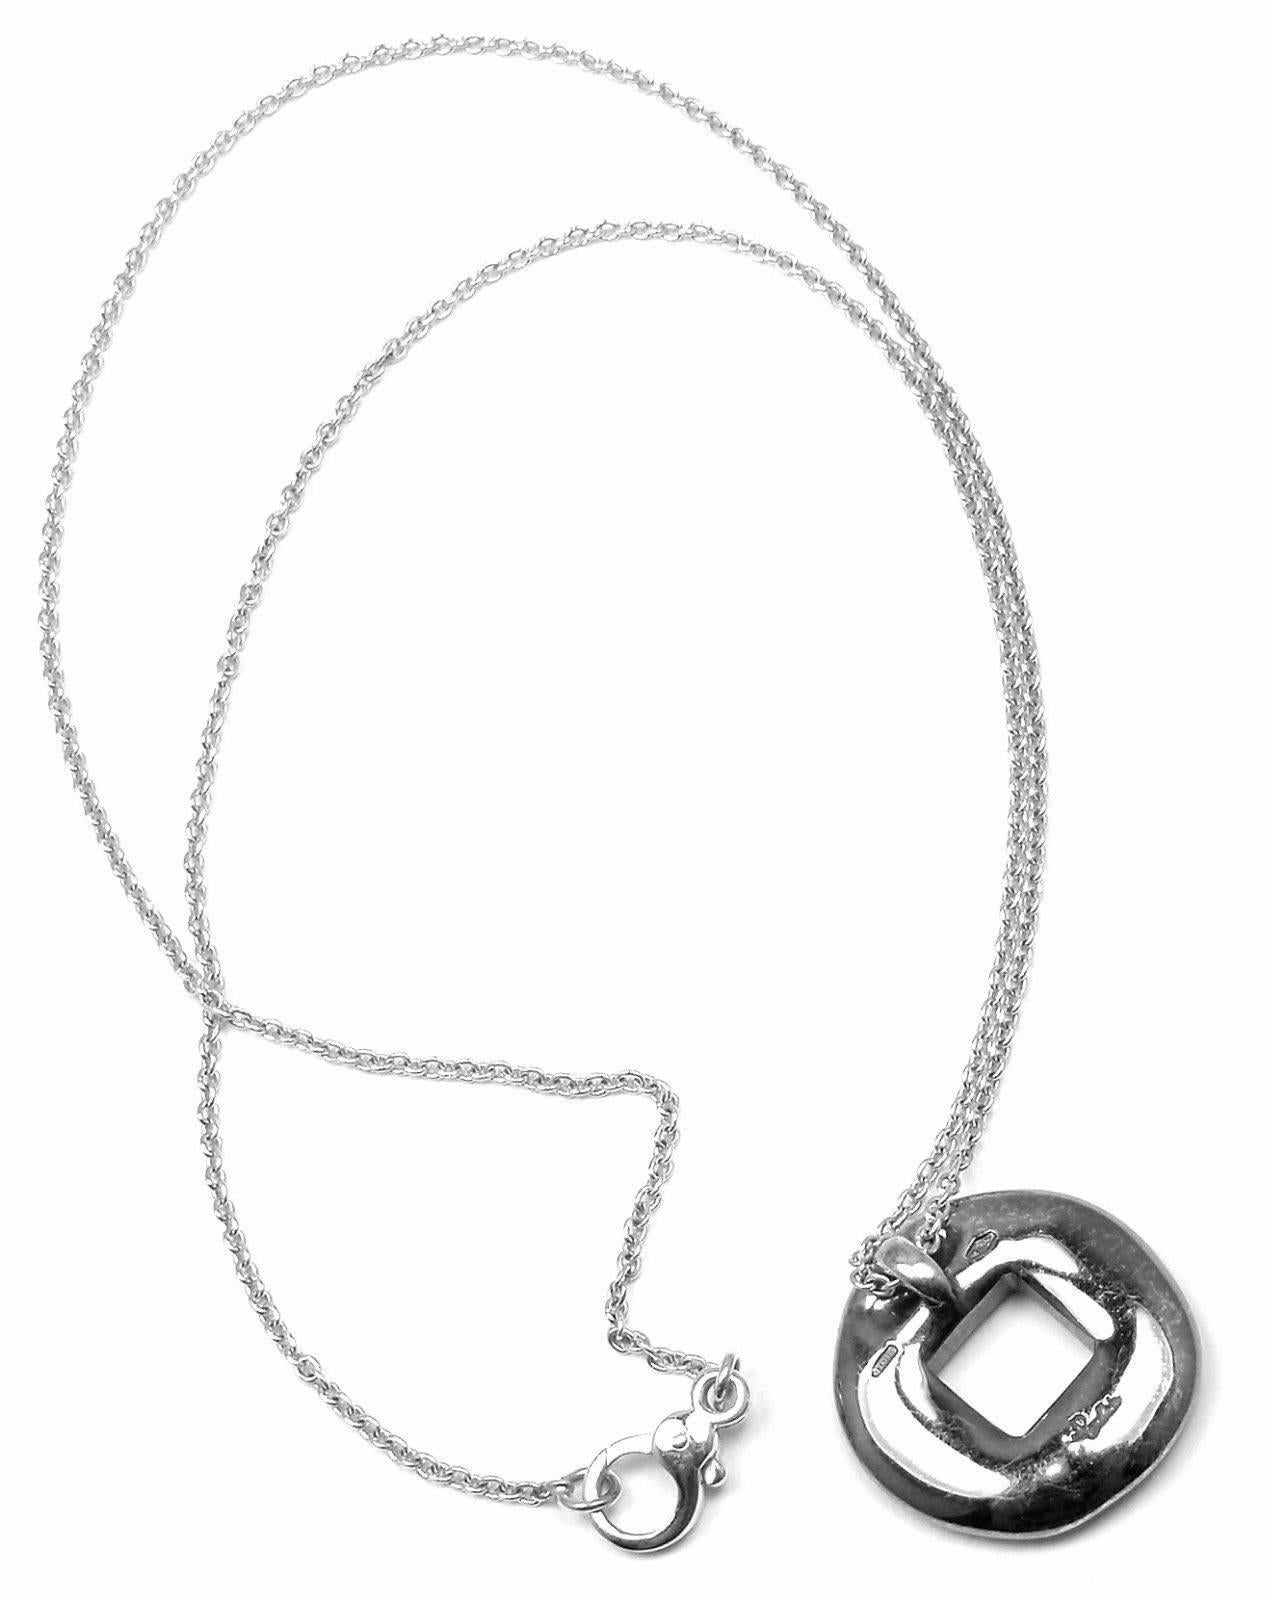 Women's or Men's Pomellato Sapphire White Gold Pendant Necklace